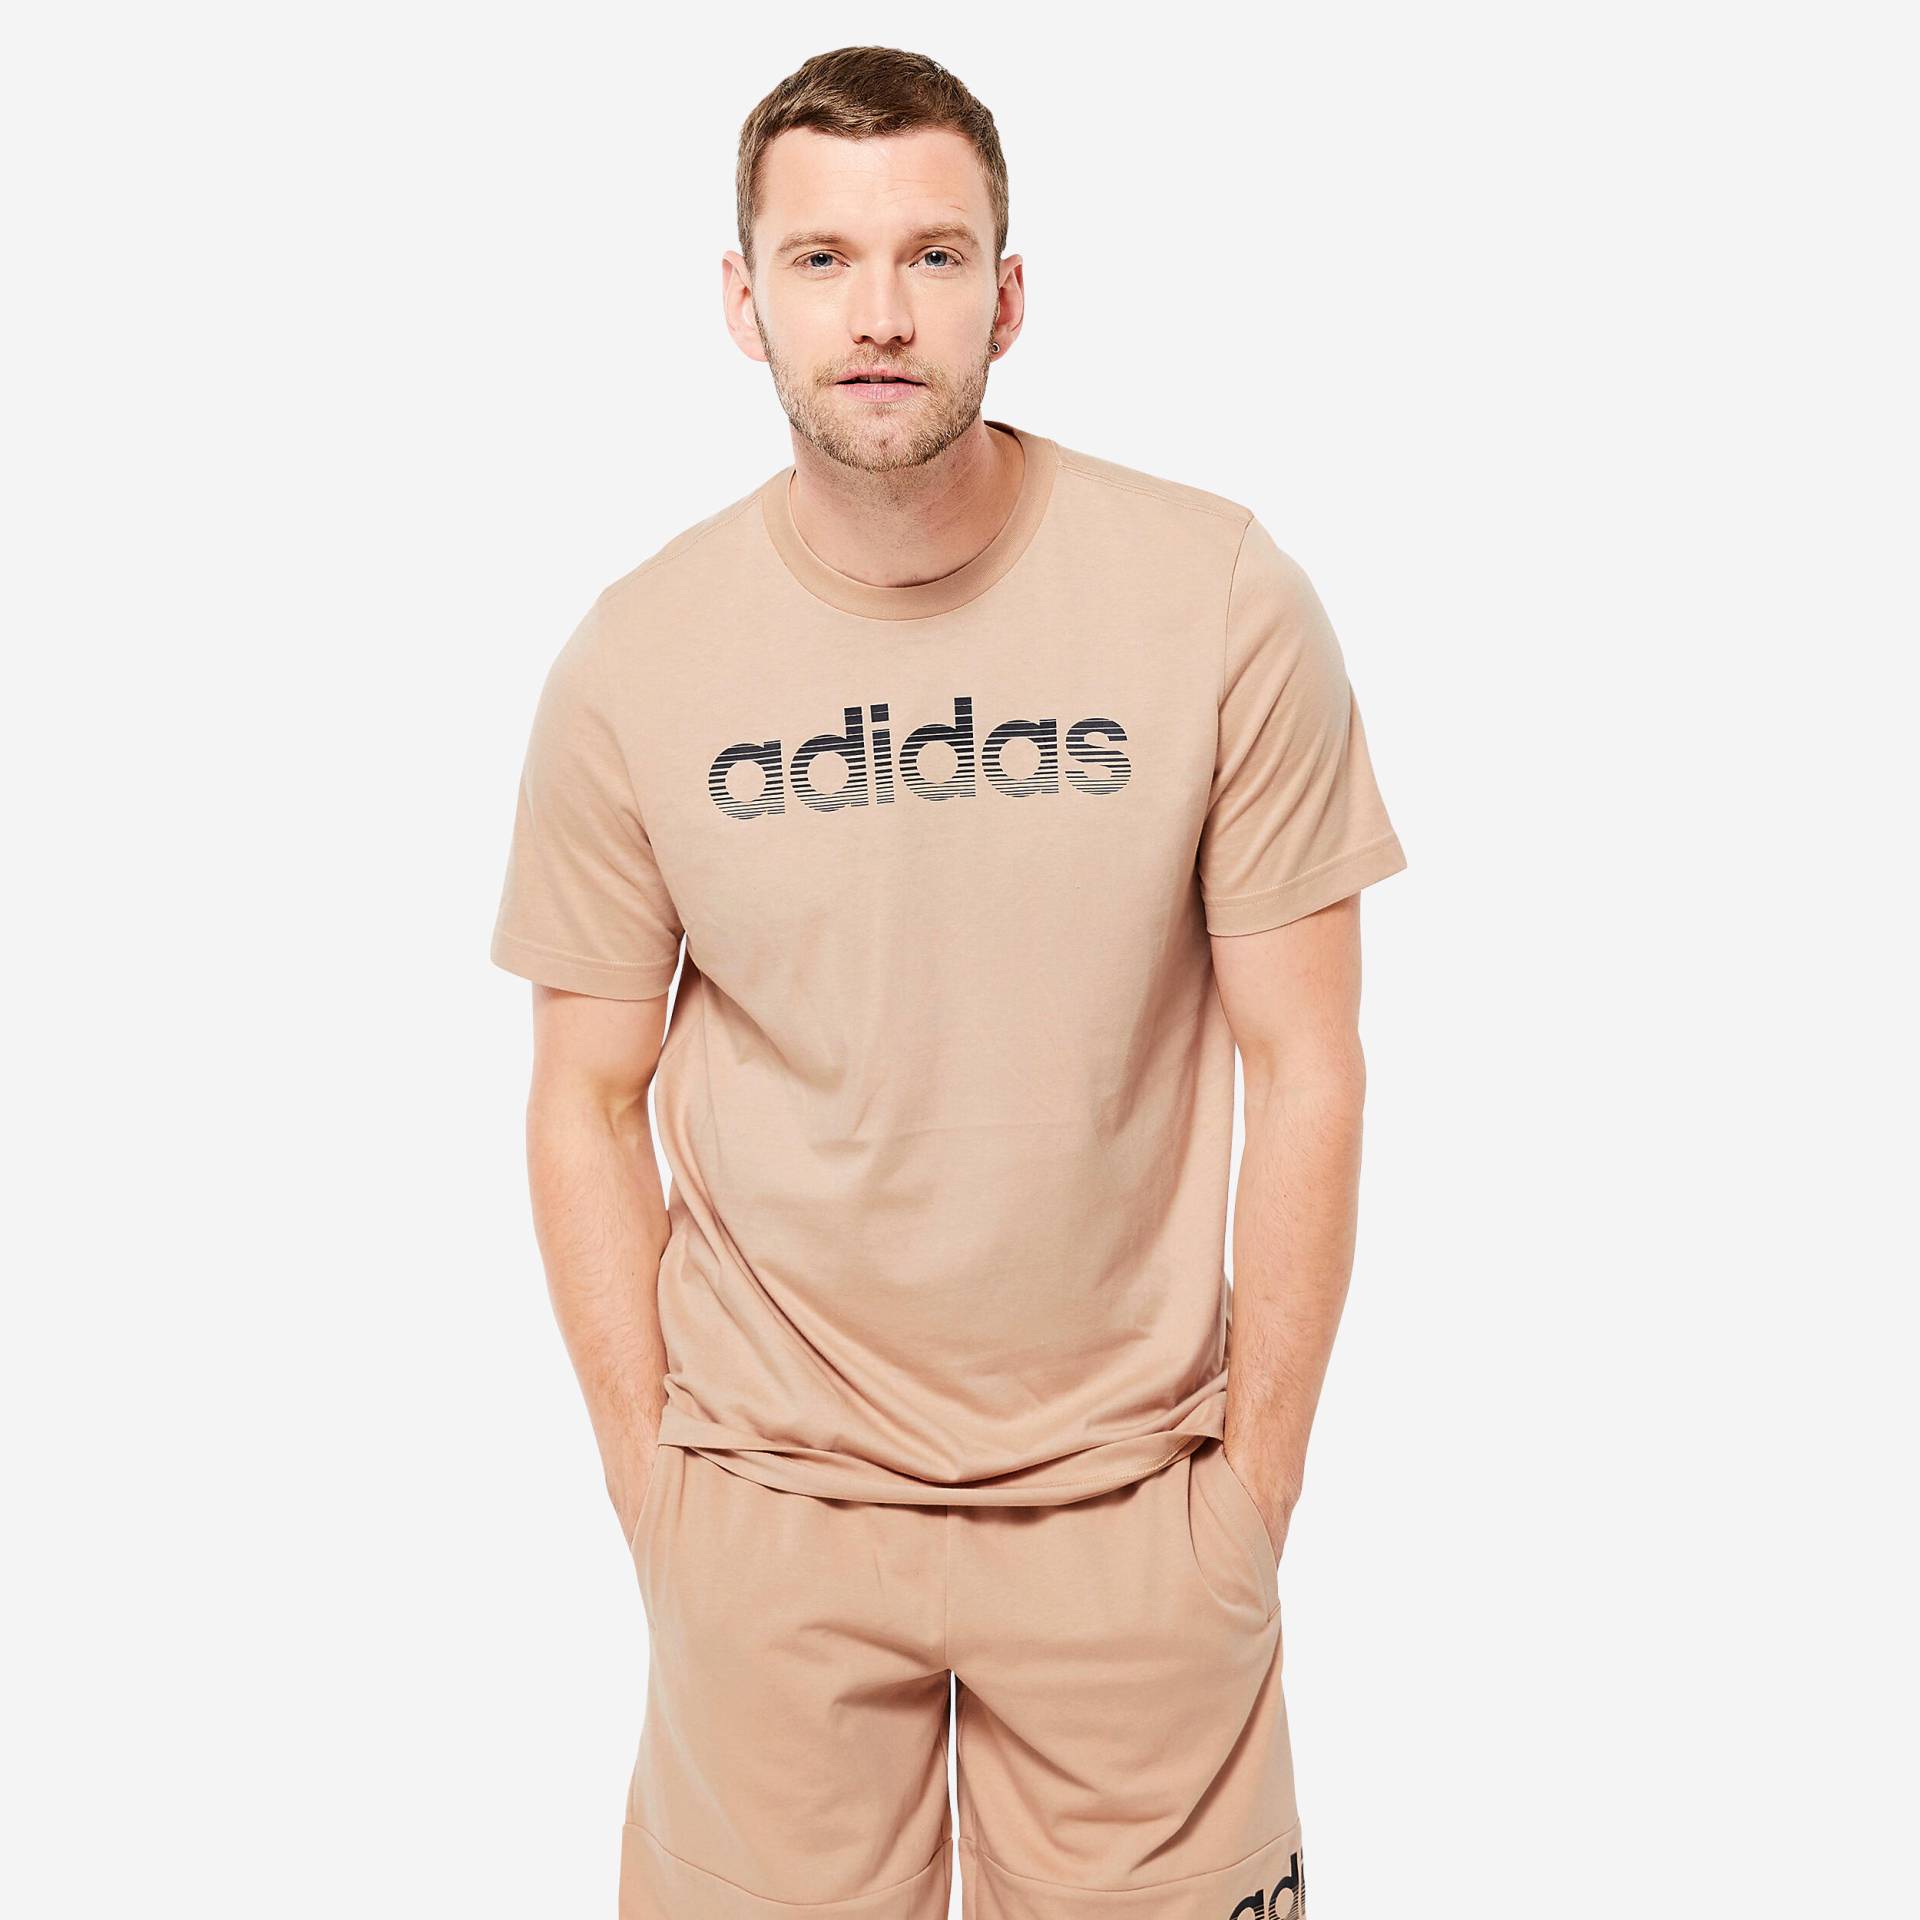 ADIDAS T-Shirt Herren weich - beige von Adidas